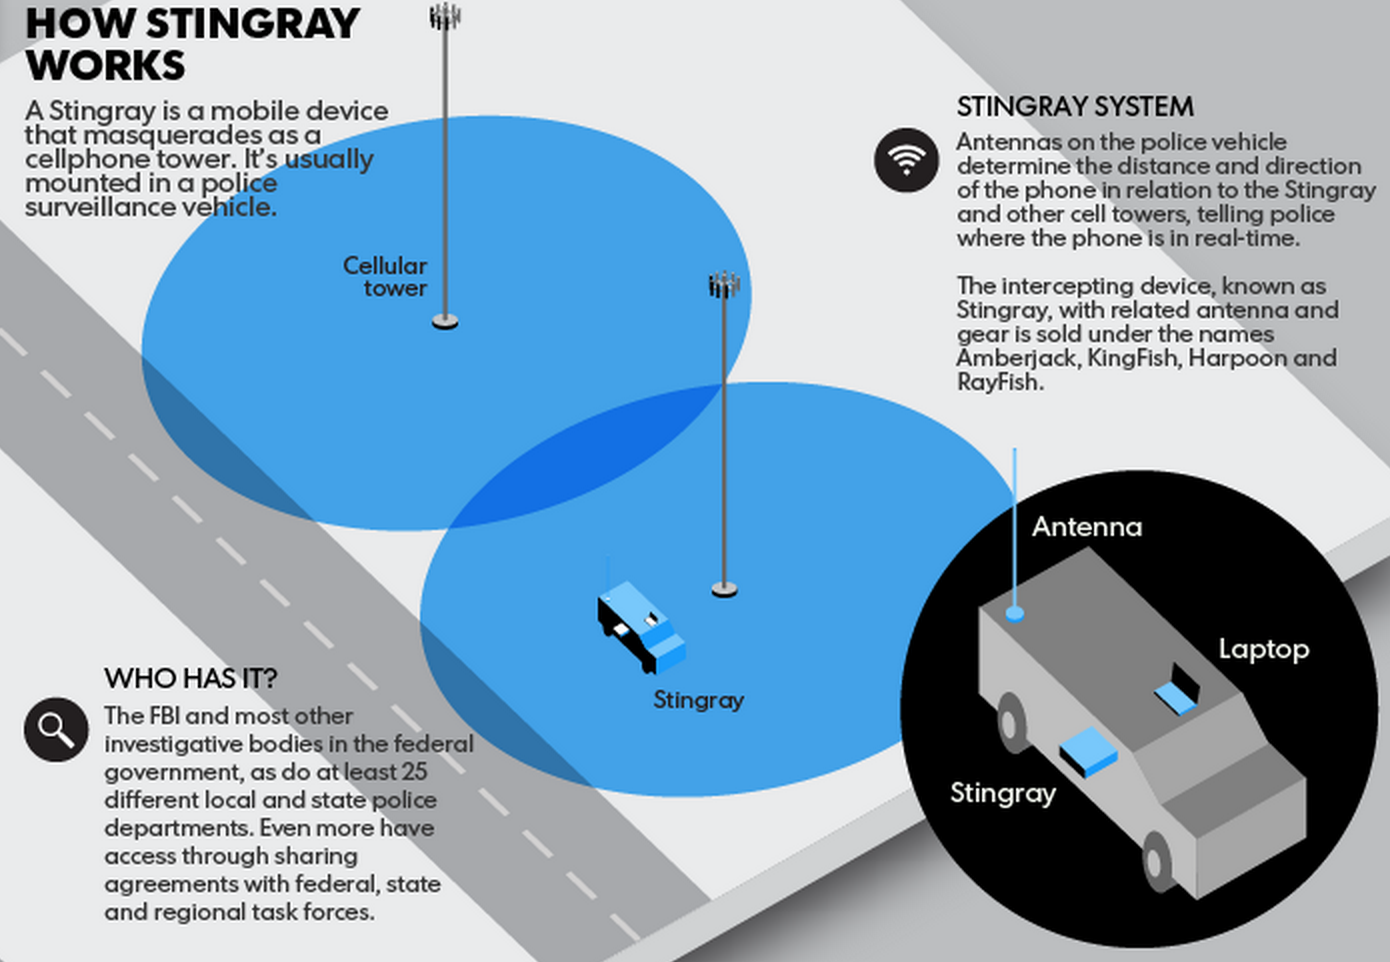 Stingray System